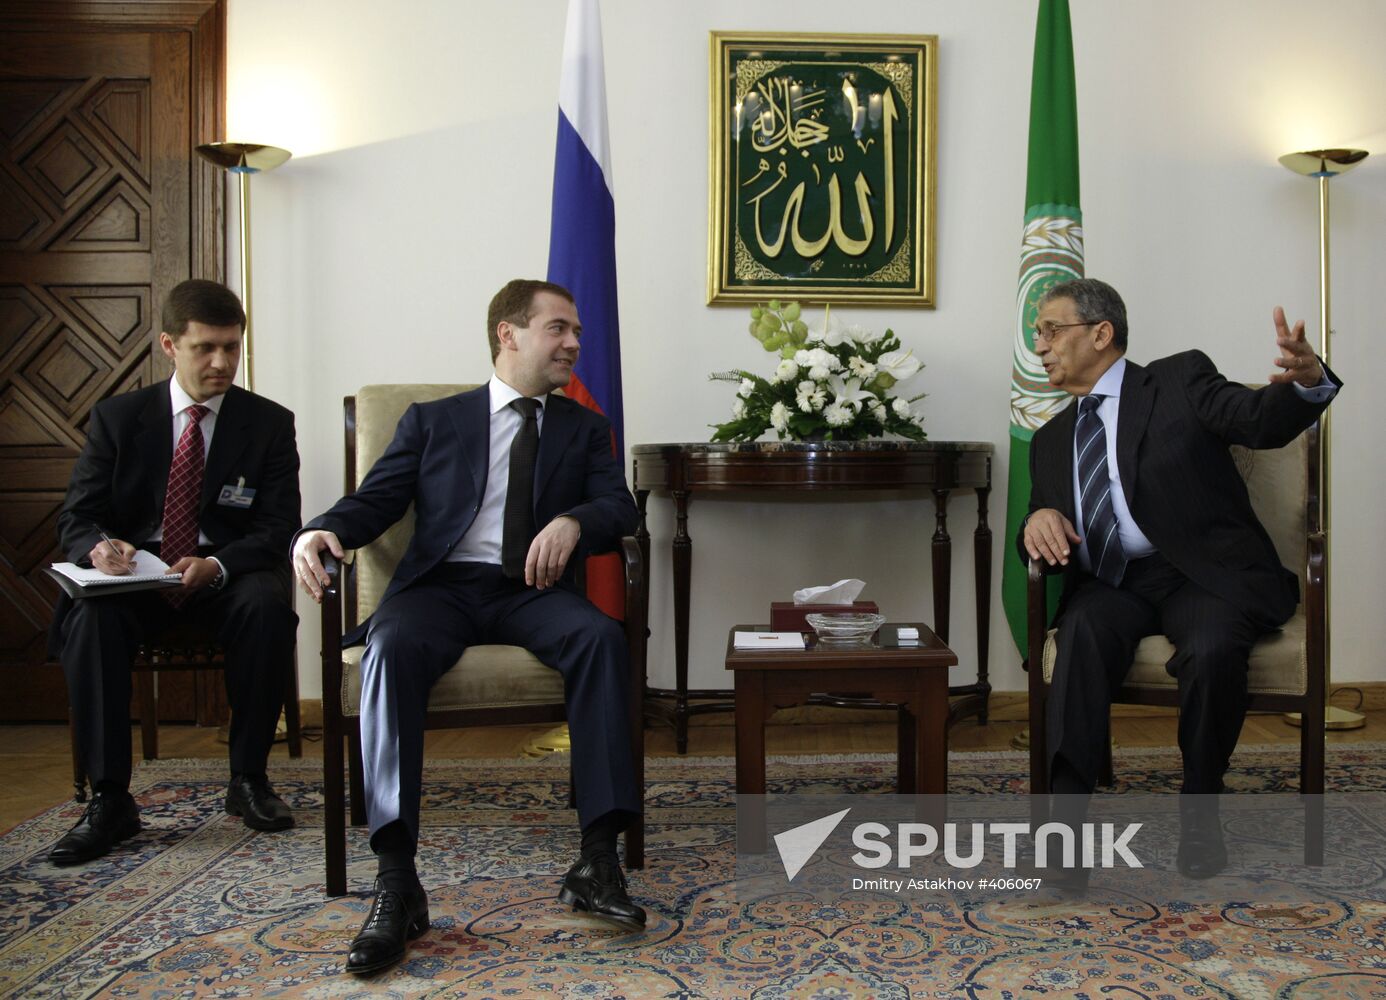 President Dmitry Medvedev's official visit to Egypt